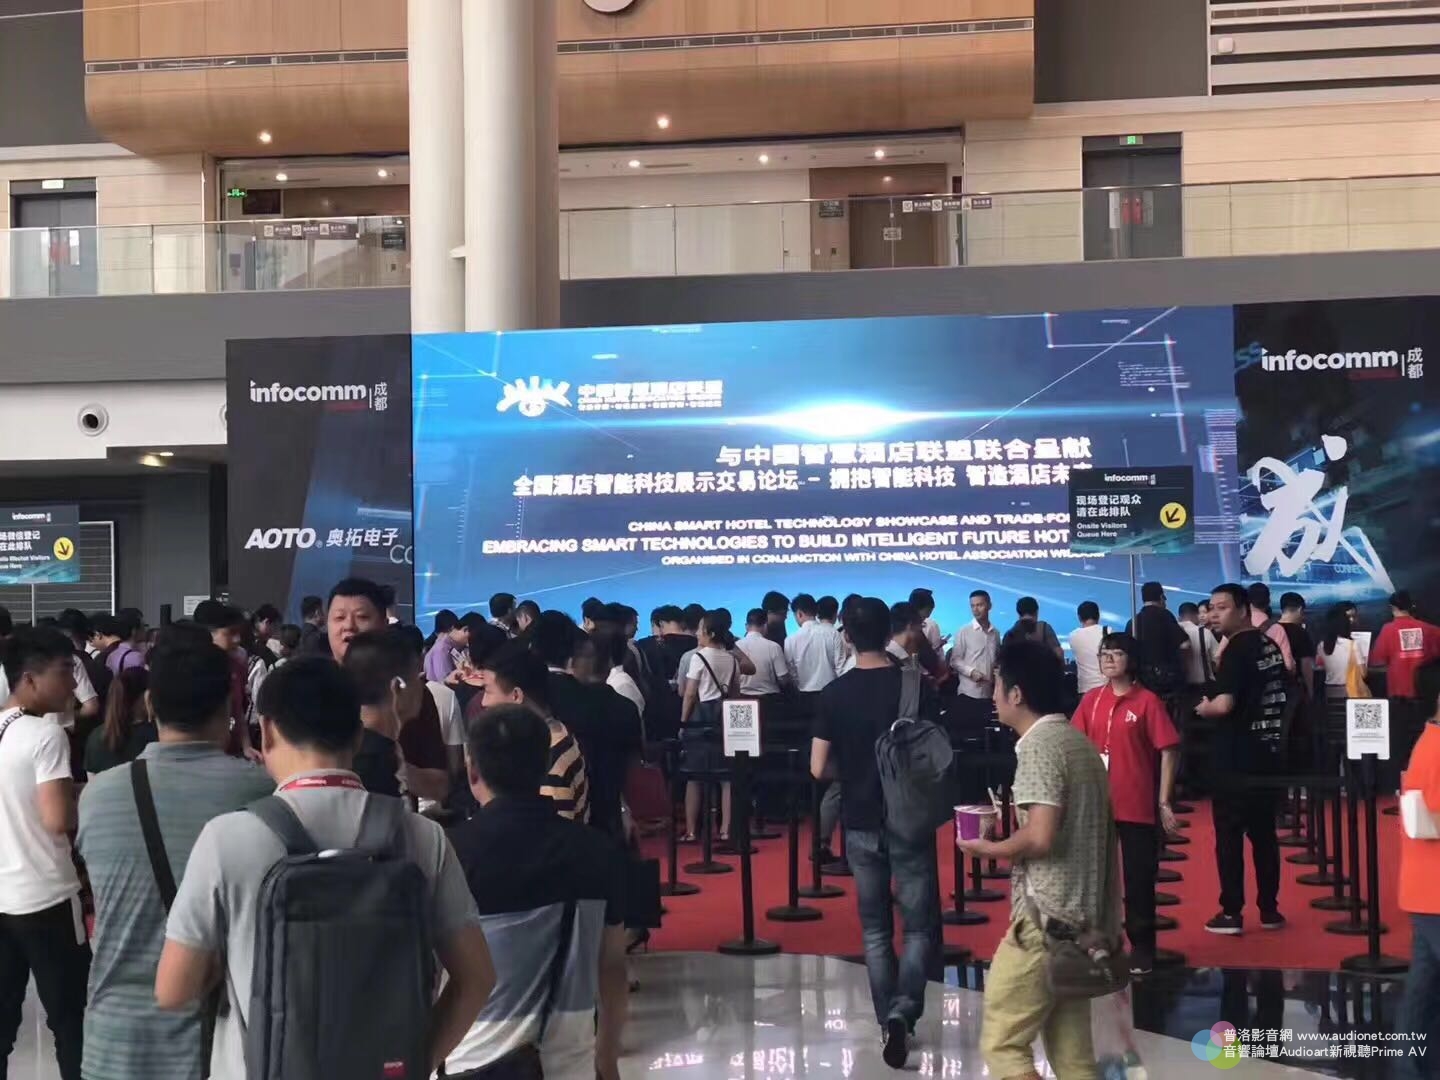 聚焦成都的專業影音盛會！成都InfoComm China 2018